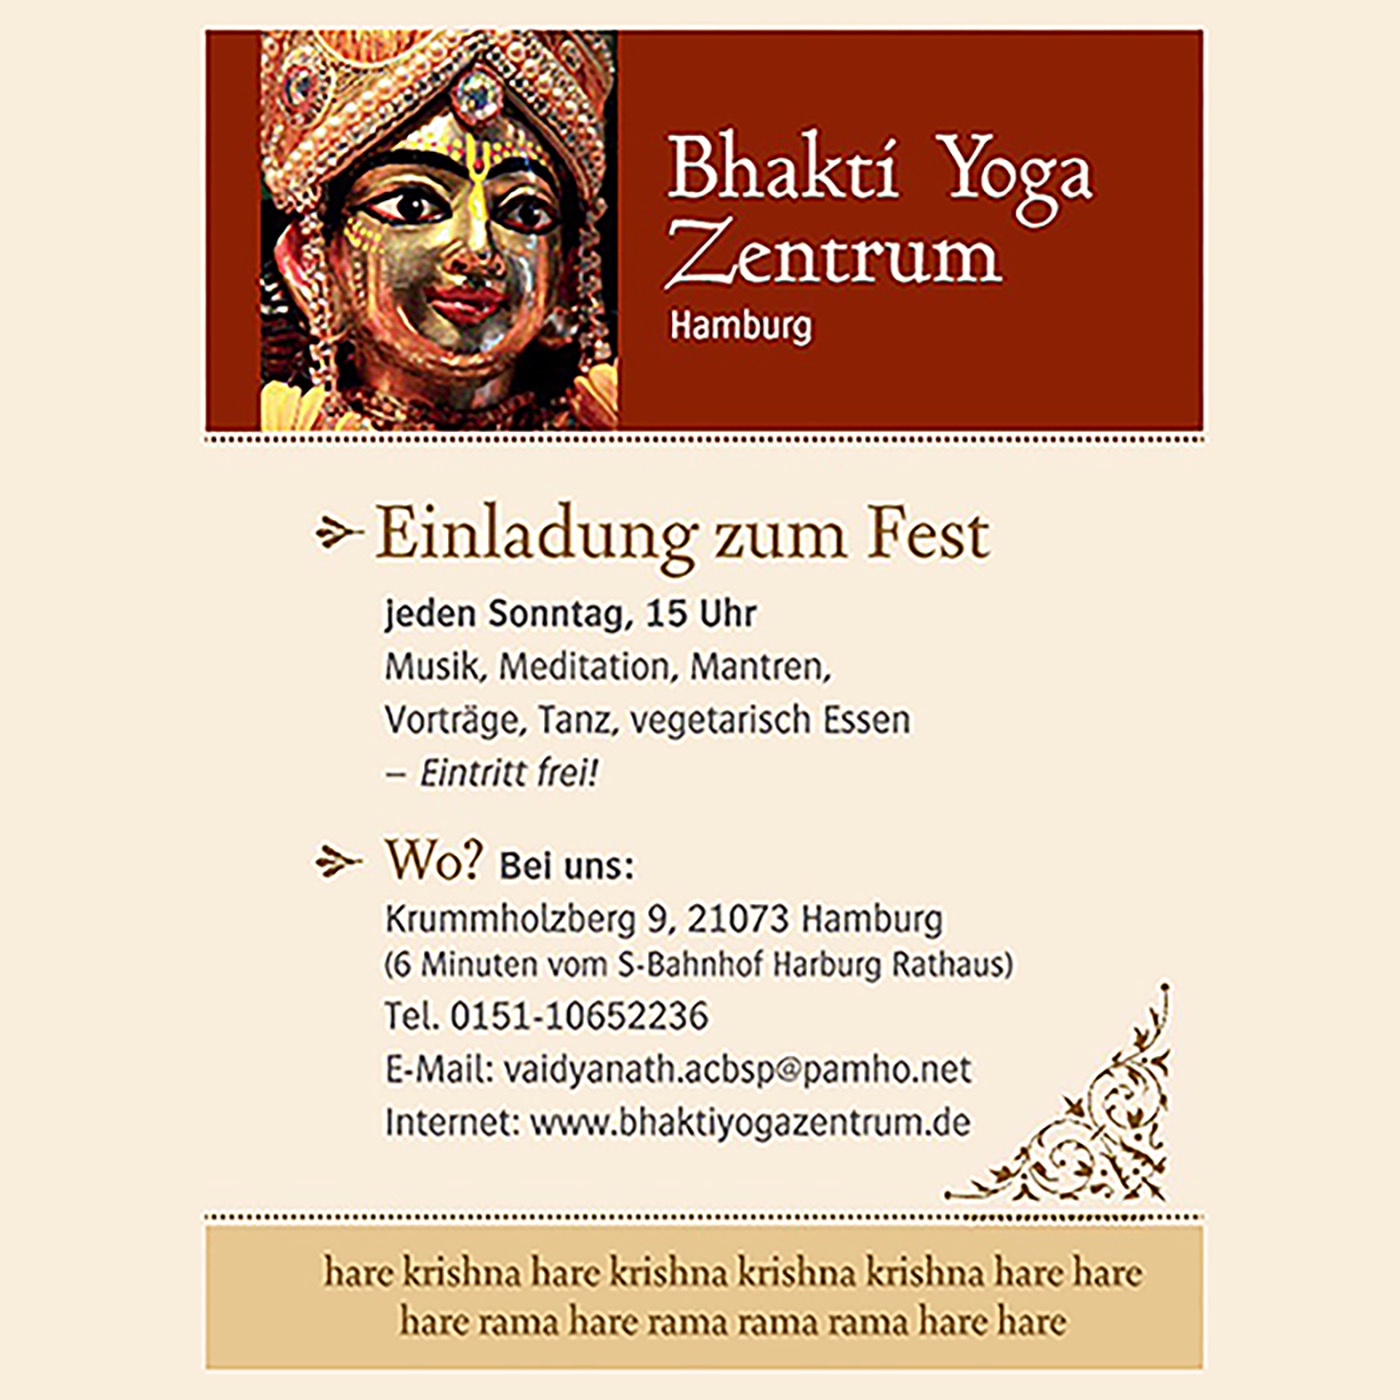 Vorträge im Bhakti Yoga Zentrum Hamburg